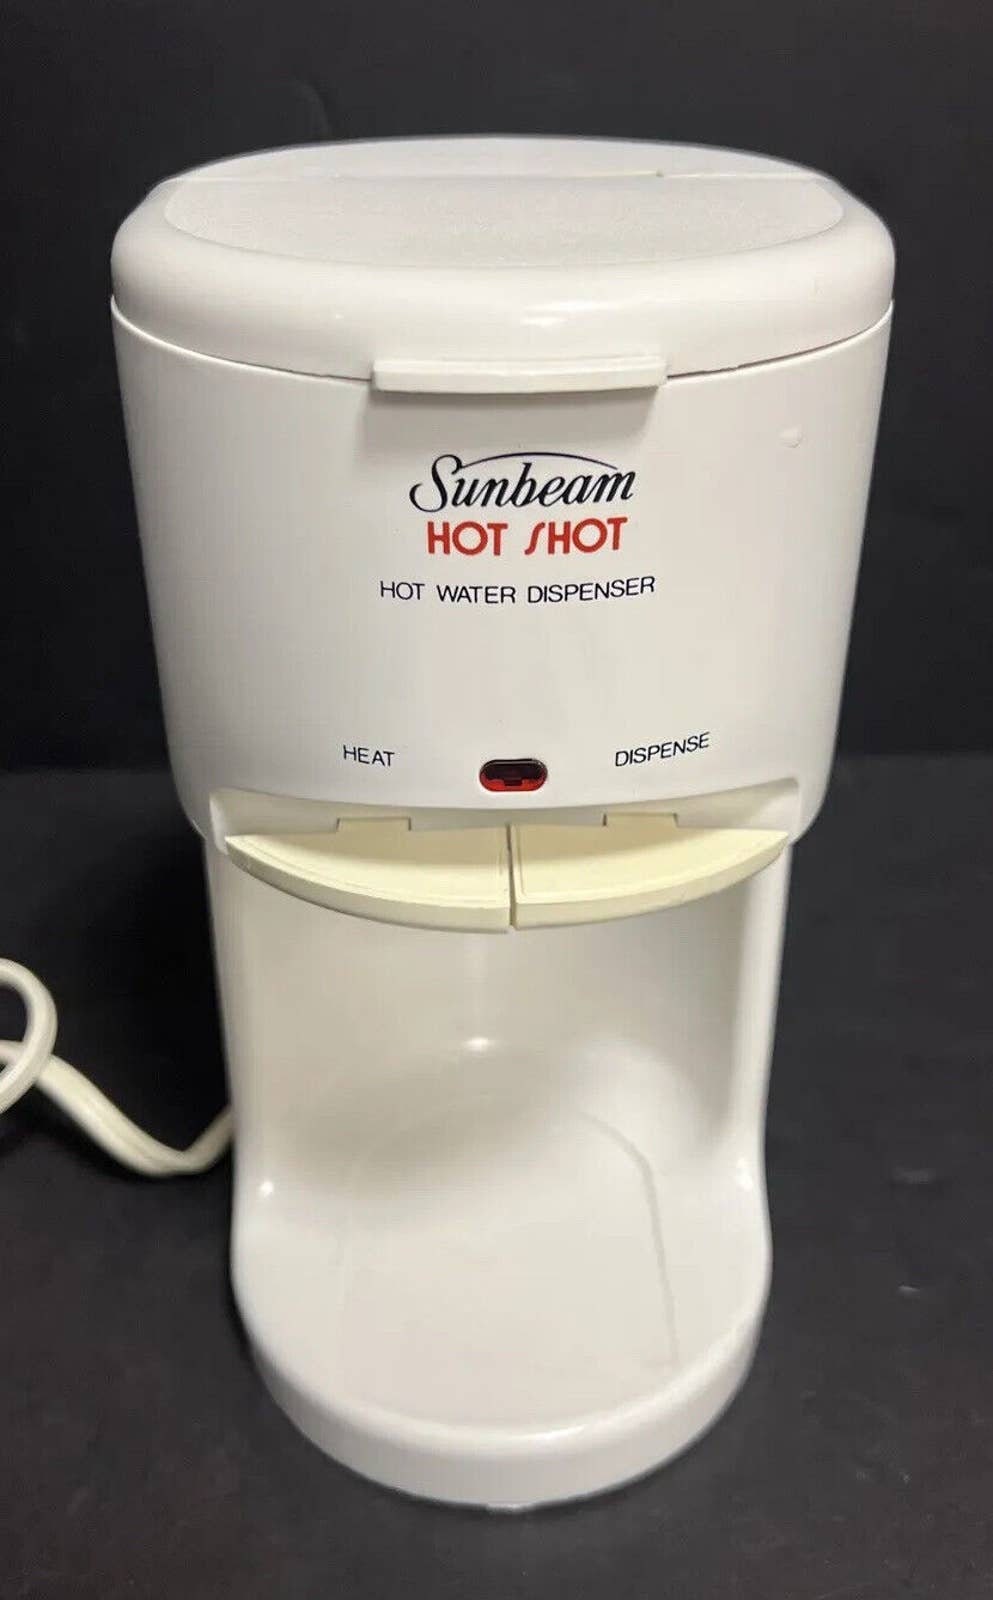 Preowned Sunbeam Hot Shot Hot Water Dispenser 16 Oz White 